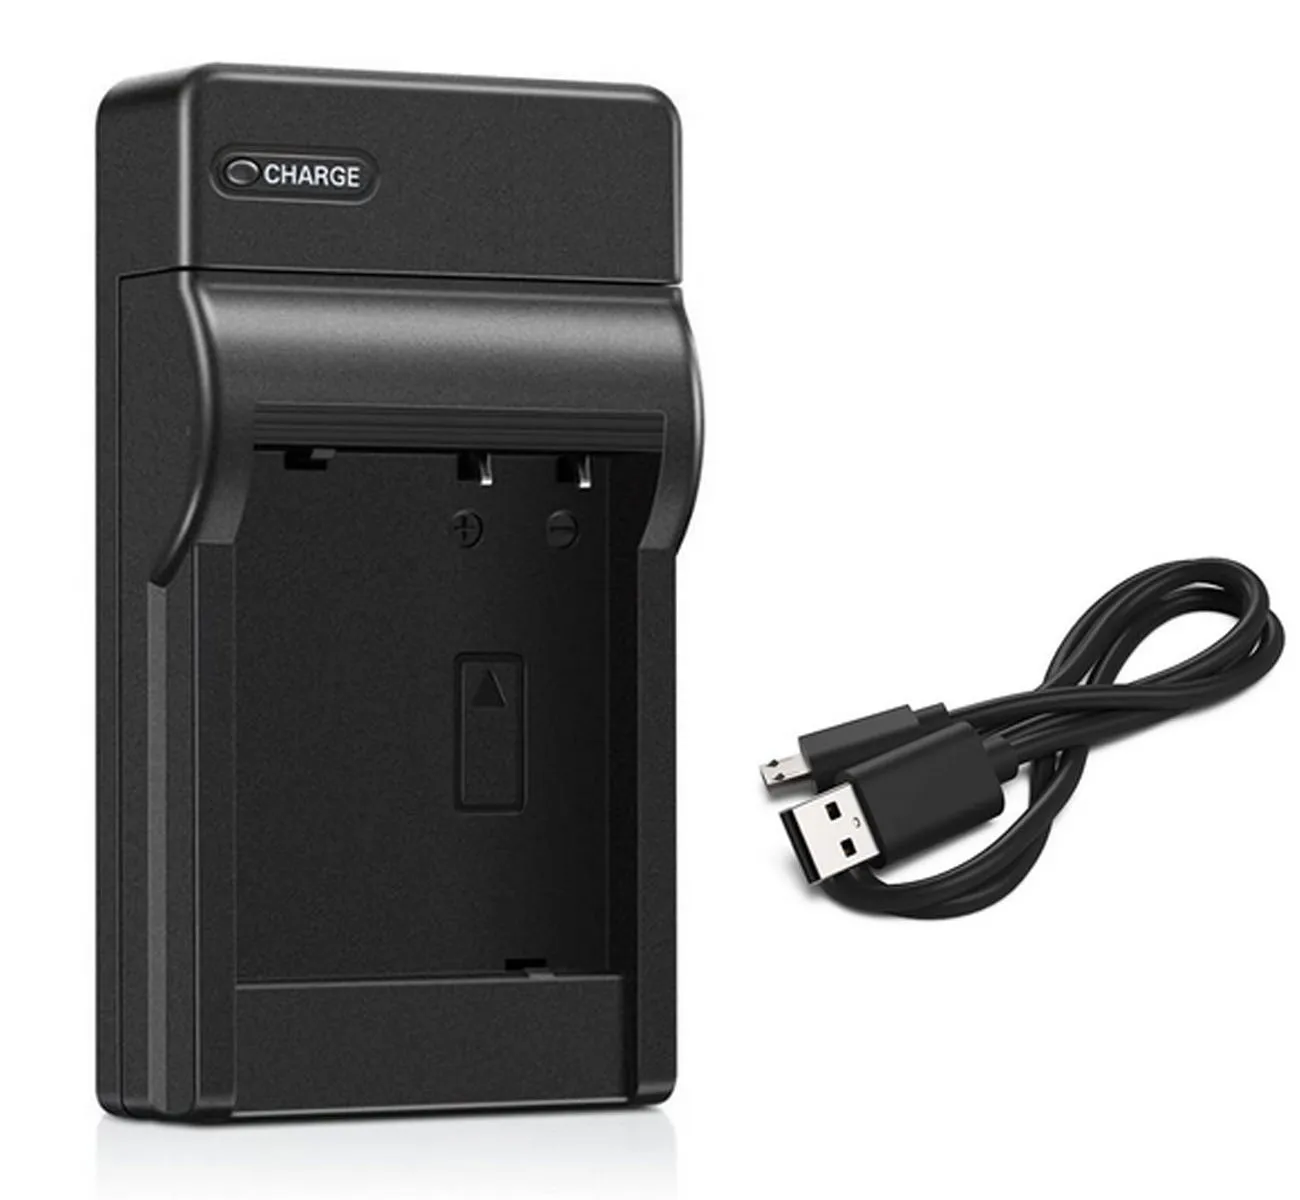 2X Battery & USB Charger For Sony CyberShot DSC-W515PS DSC-QX30 DSC-TF1 DSC-W530 